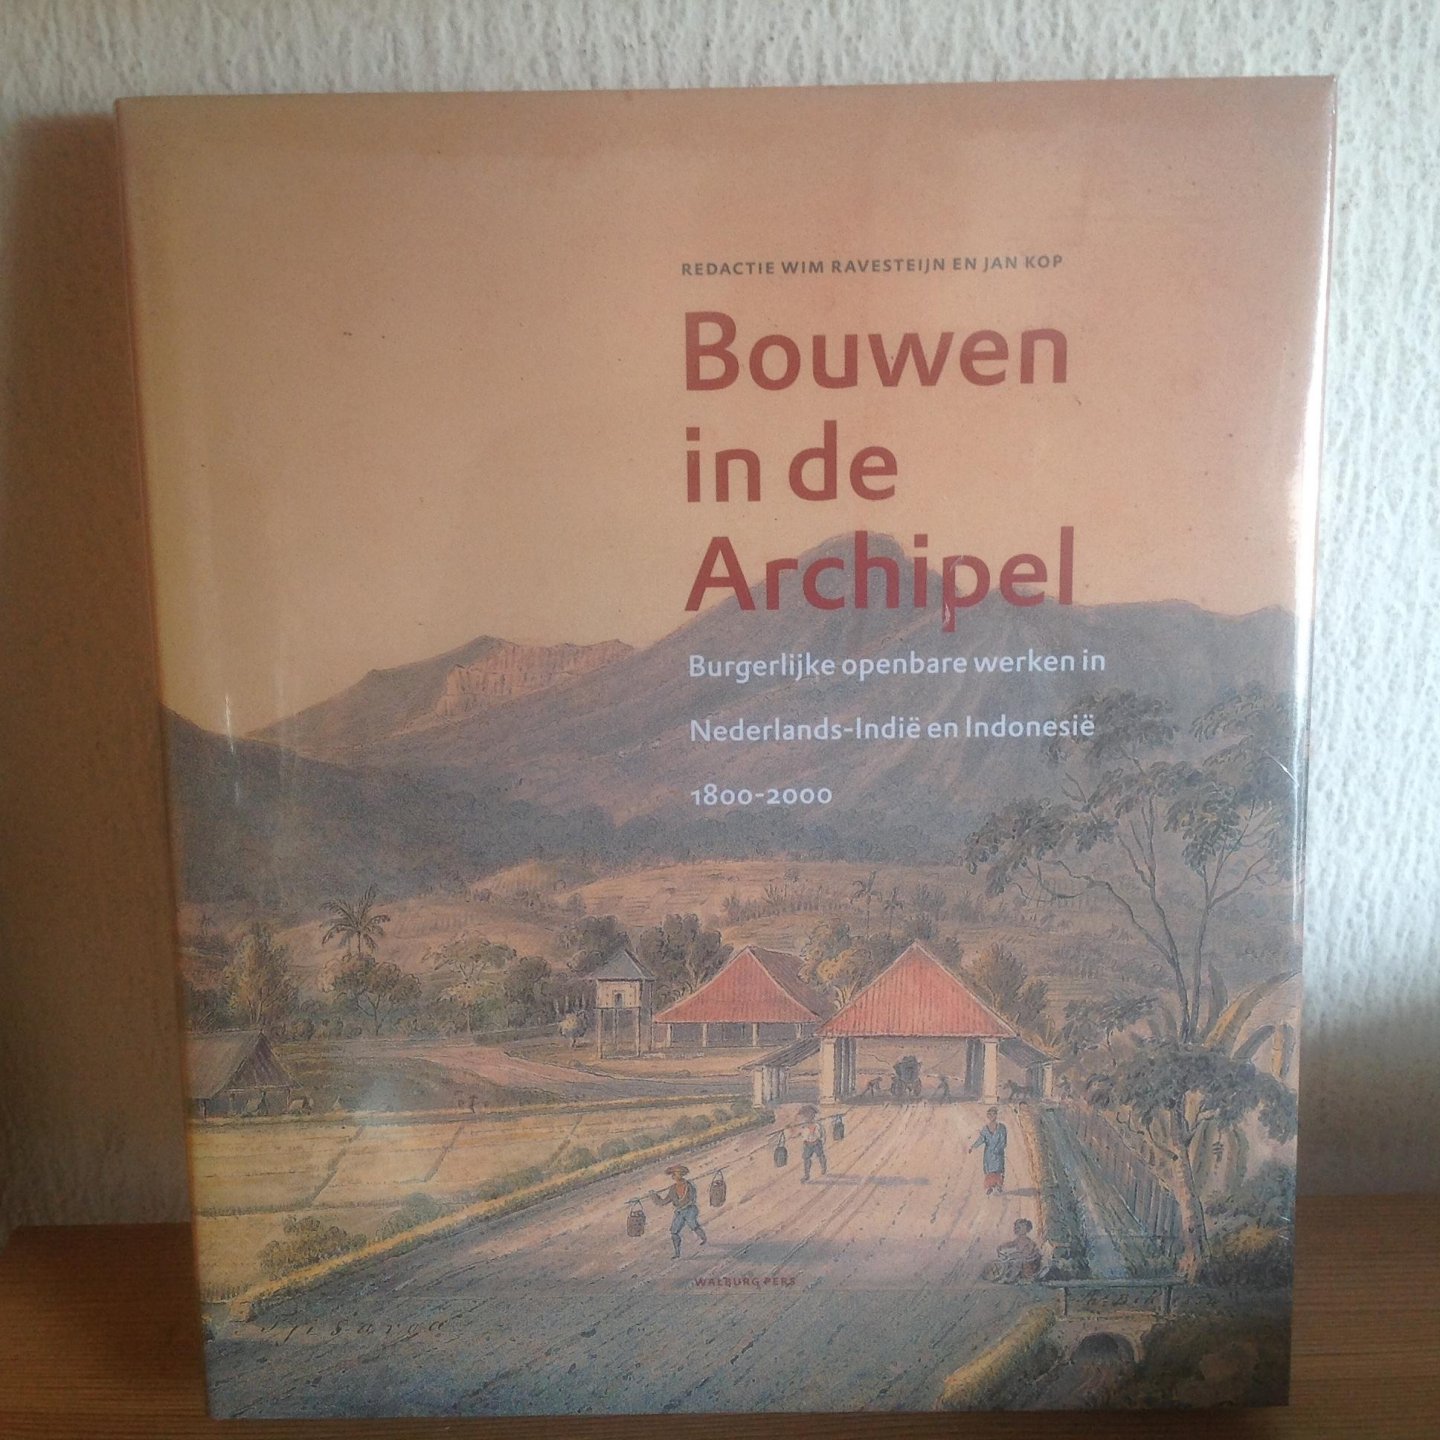 Ravesteijn, W. / Kop, J. - Bouwen in de Archipel / burgerlijke openbare werken in Nederlands-Indie en Indonesie 1800-2000